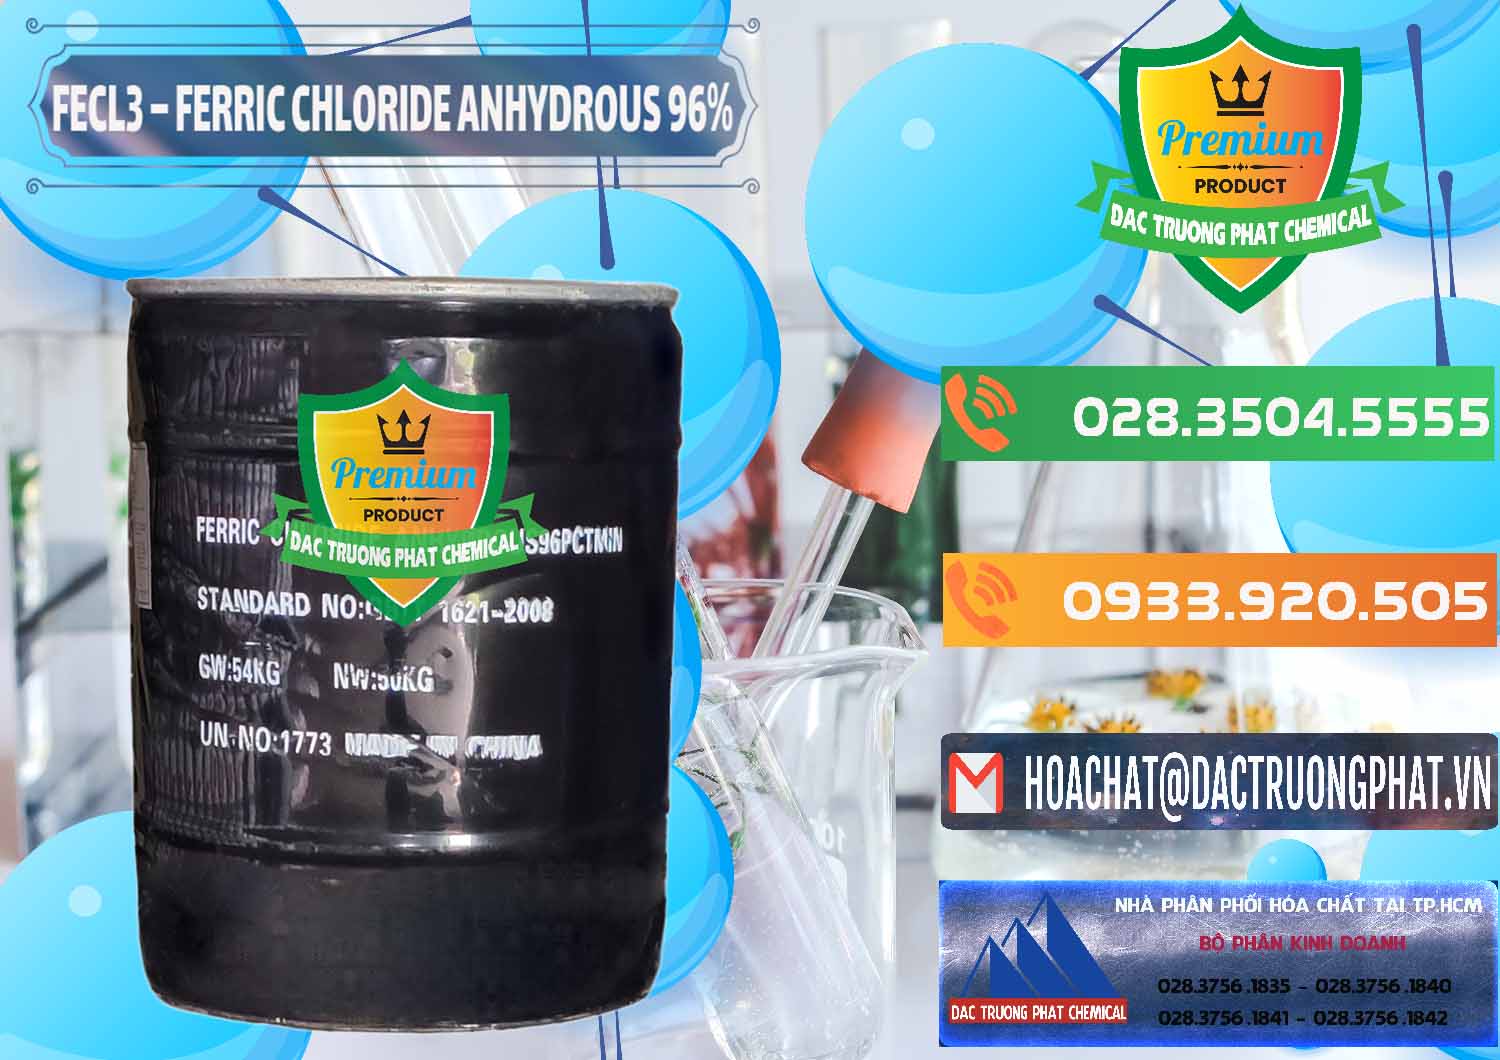 Nơi chuyên cung cấp _ bán FECL3 – Ferric Chloride Anhydrous 96% Trung Quốc China - 0065 - Công ty nhập khẩu và phân phối hóa chất tại TP.HCM - hoachatxulynuoc.com.vn